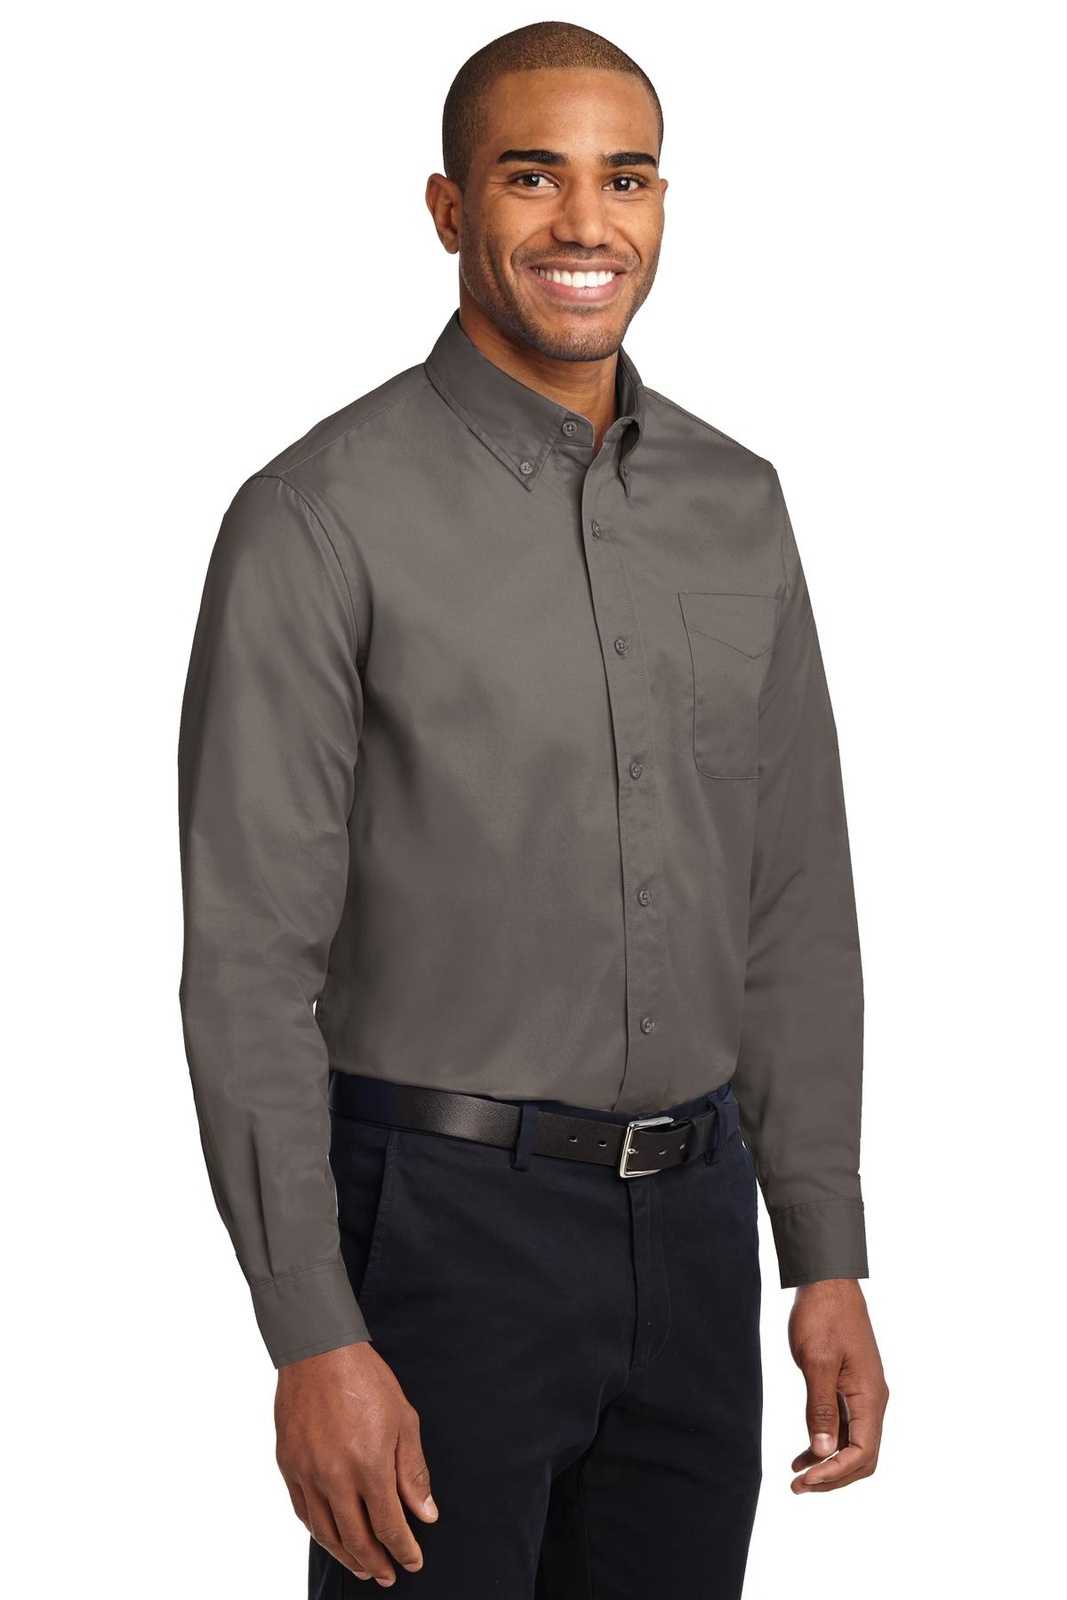 Port Authority S608 Long Sleeve Easy Care Shirt - Bark - HIT a Double - 4